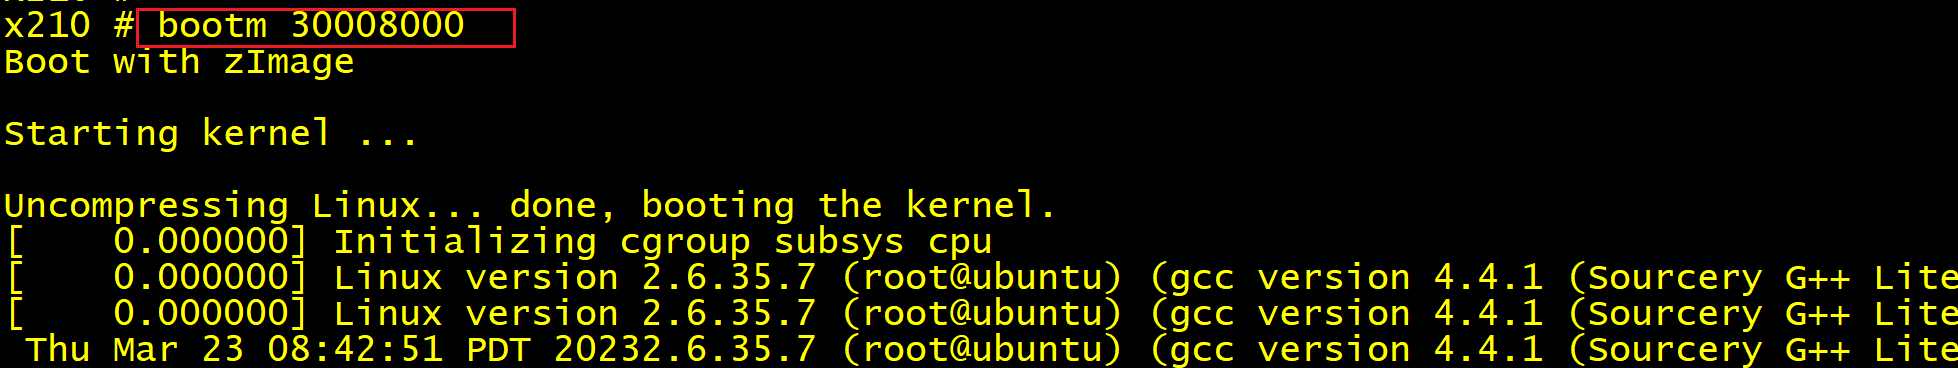 ARM uboot 启动 Linux 内核